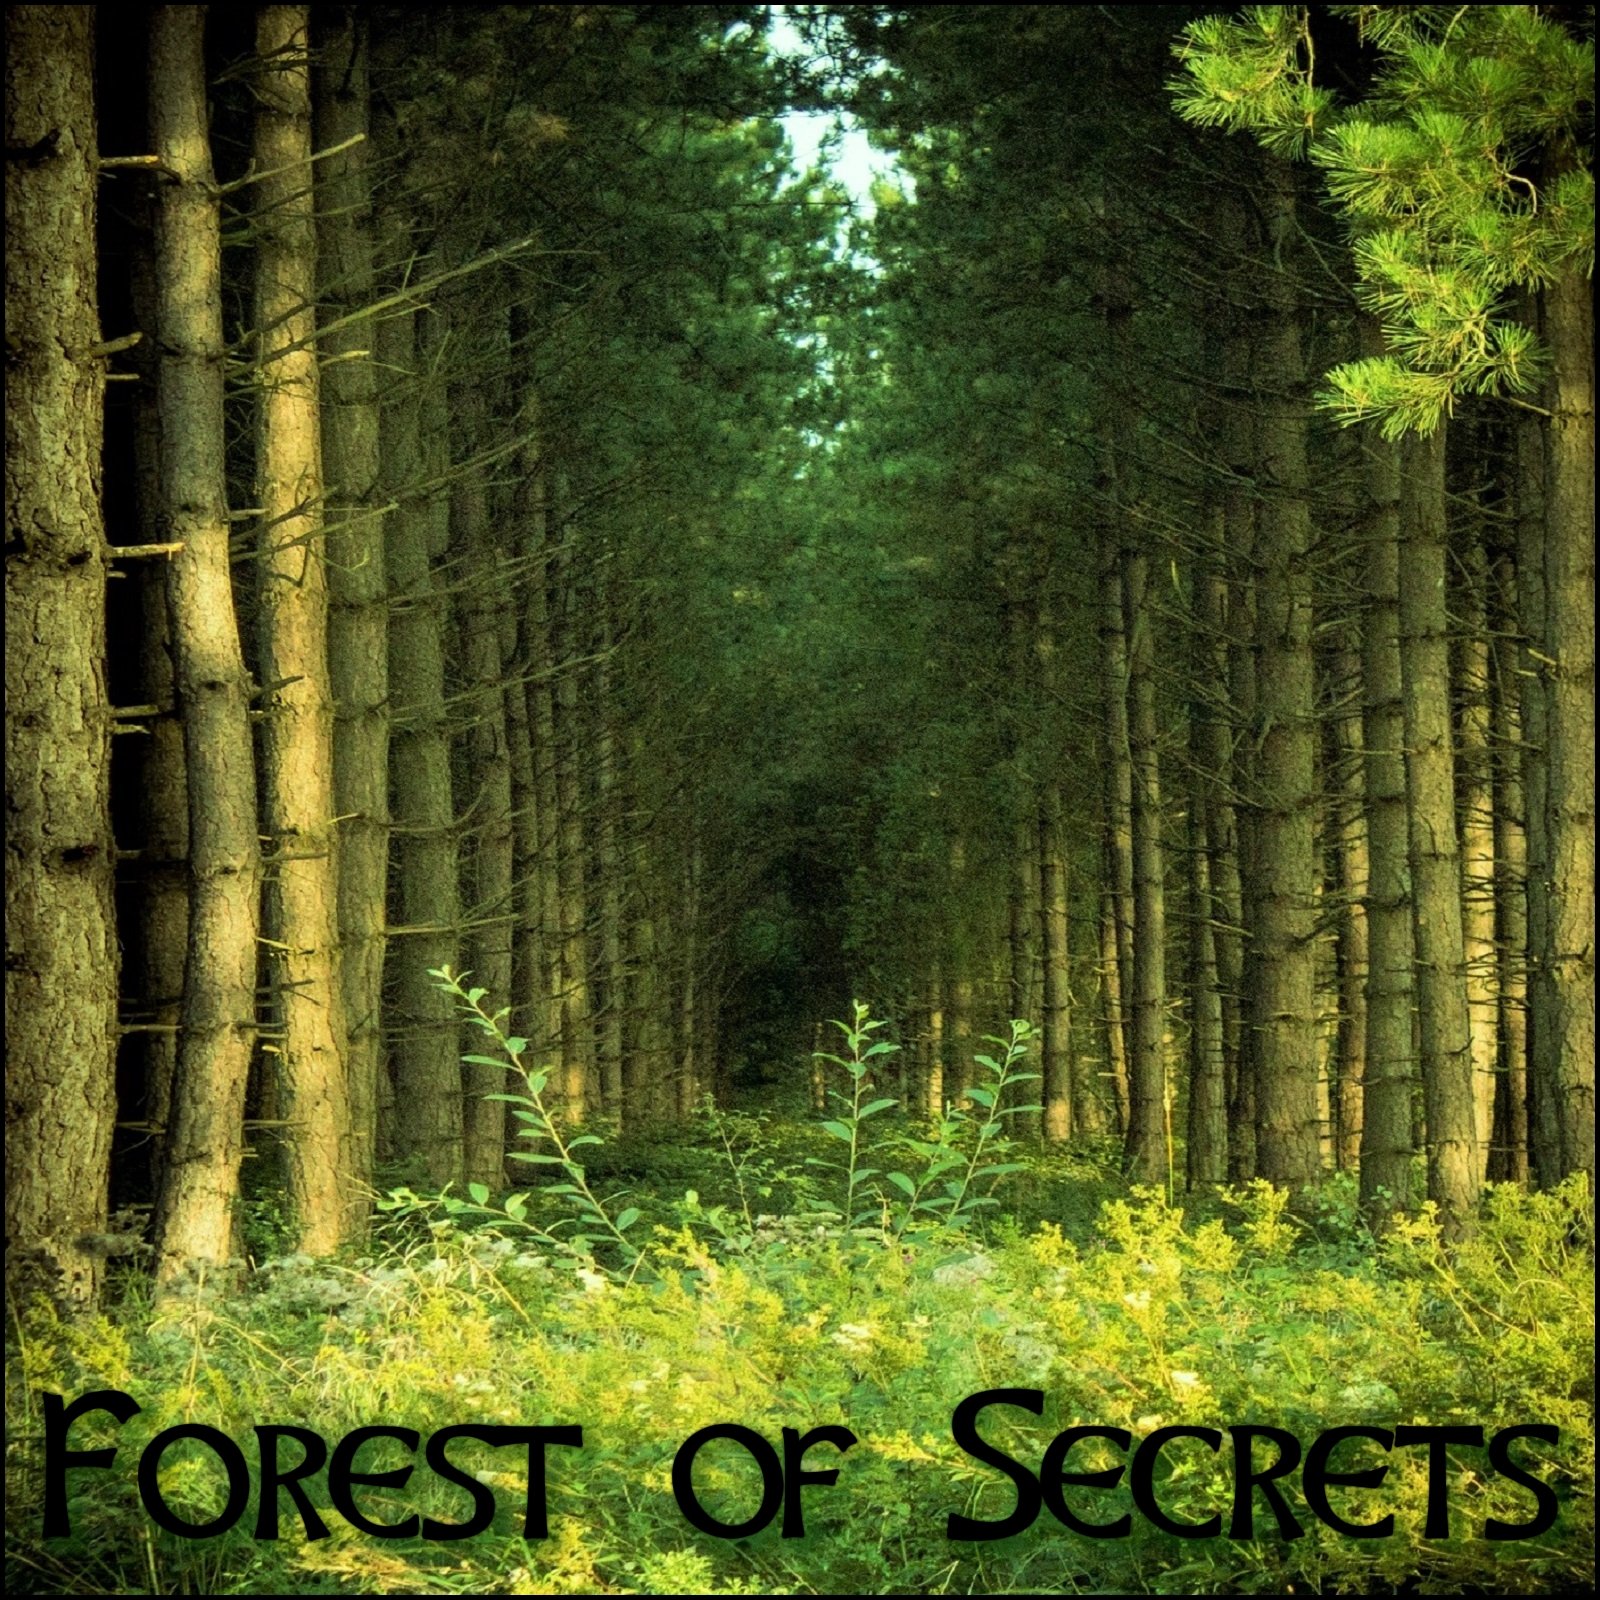 Обложка лесная. Обложка альбома лес. Обложка с лесом. The Forest обложка альбома.